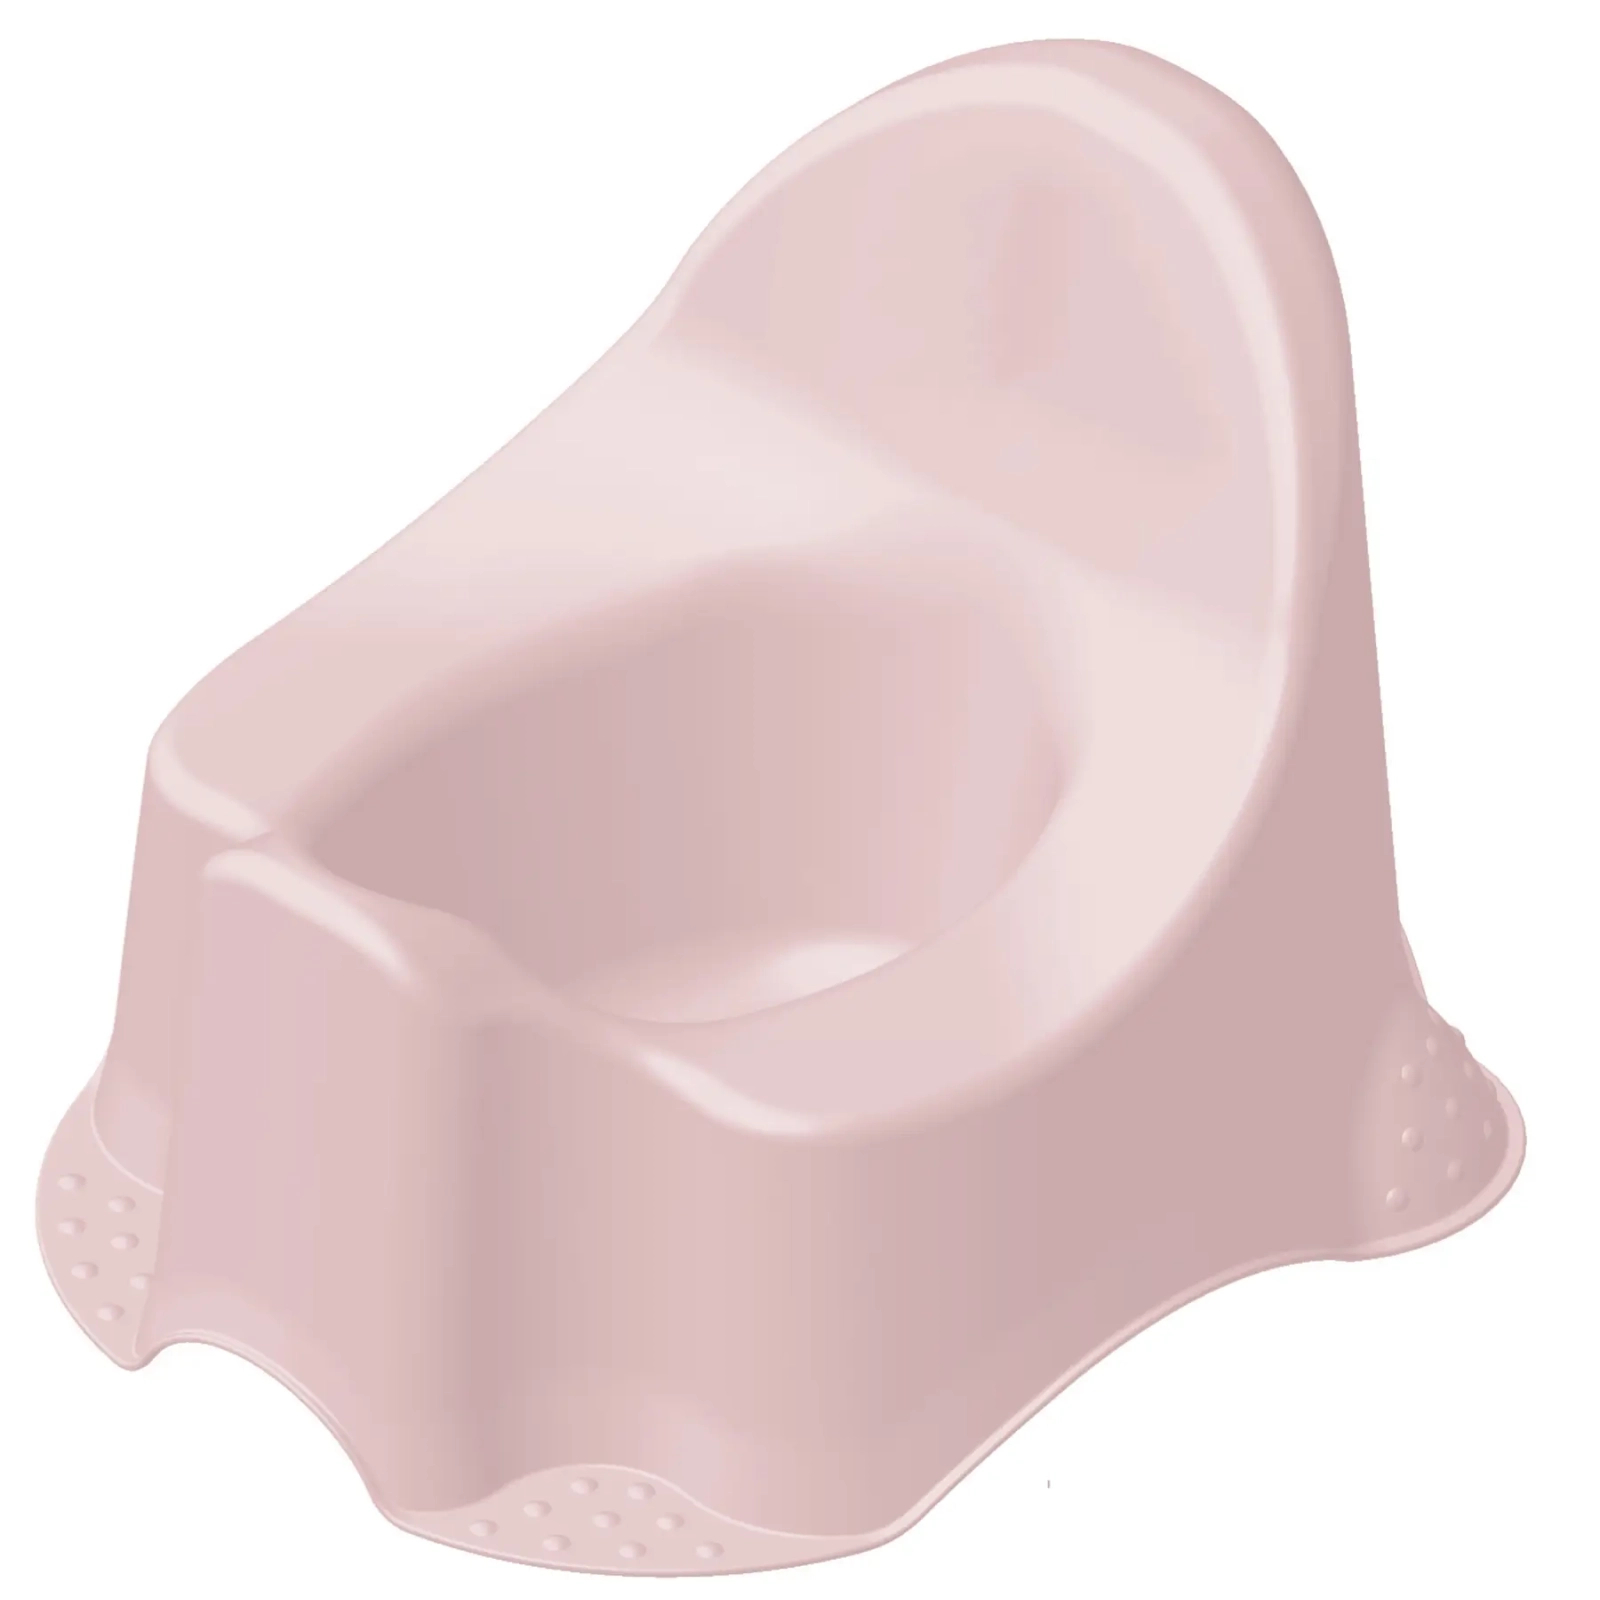 Горшок Keeeper Pure нежно-розовый (1006058100000)